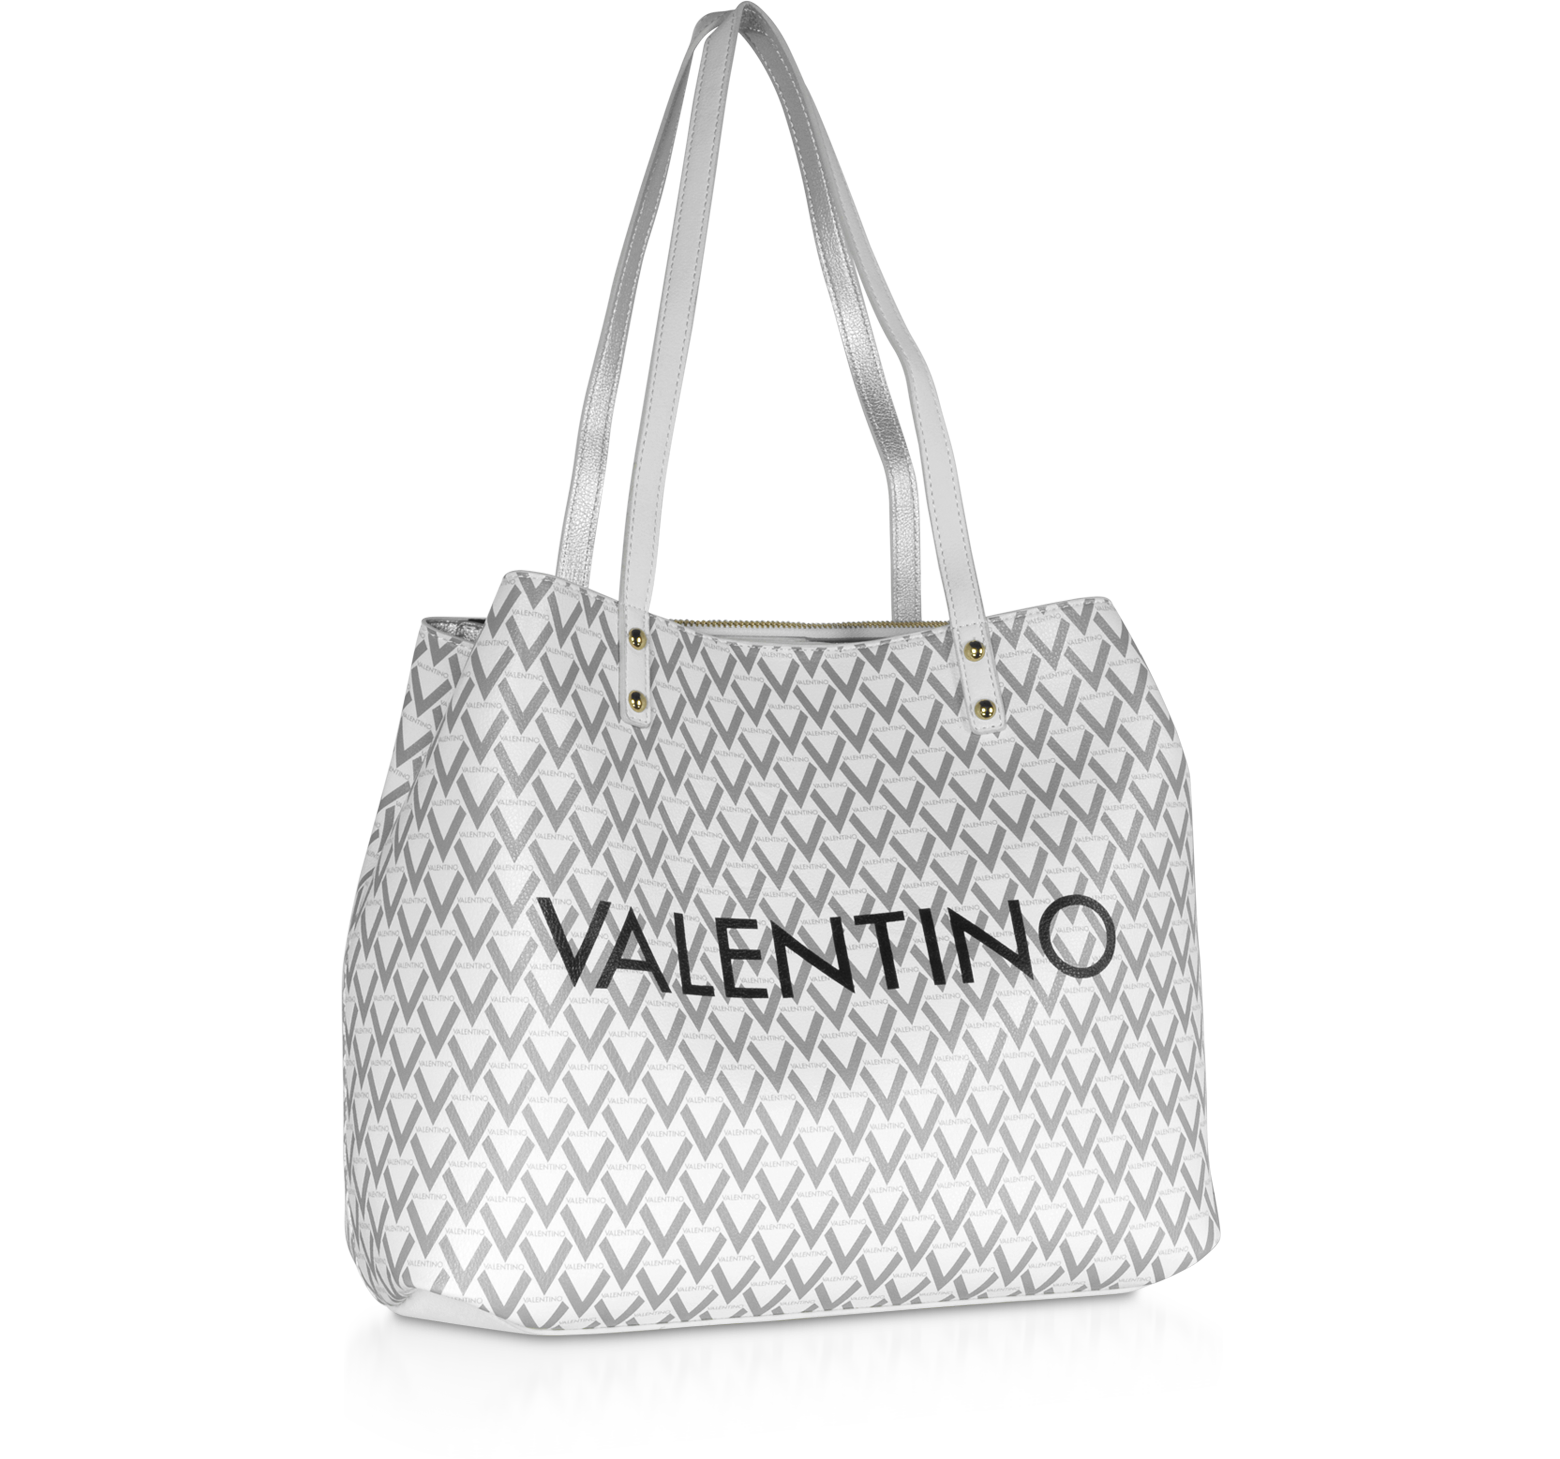 Valentino by Mario Valentino bag🙈 - Frais online shop